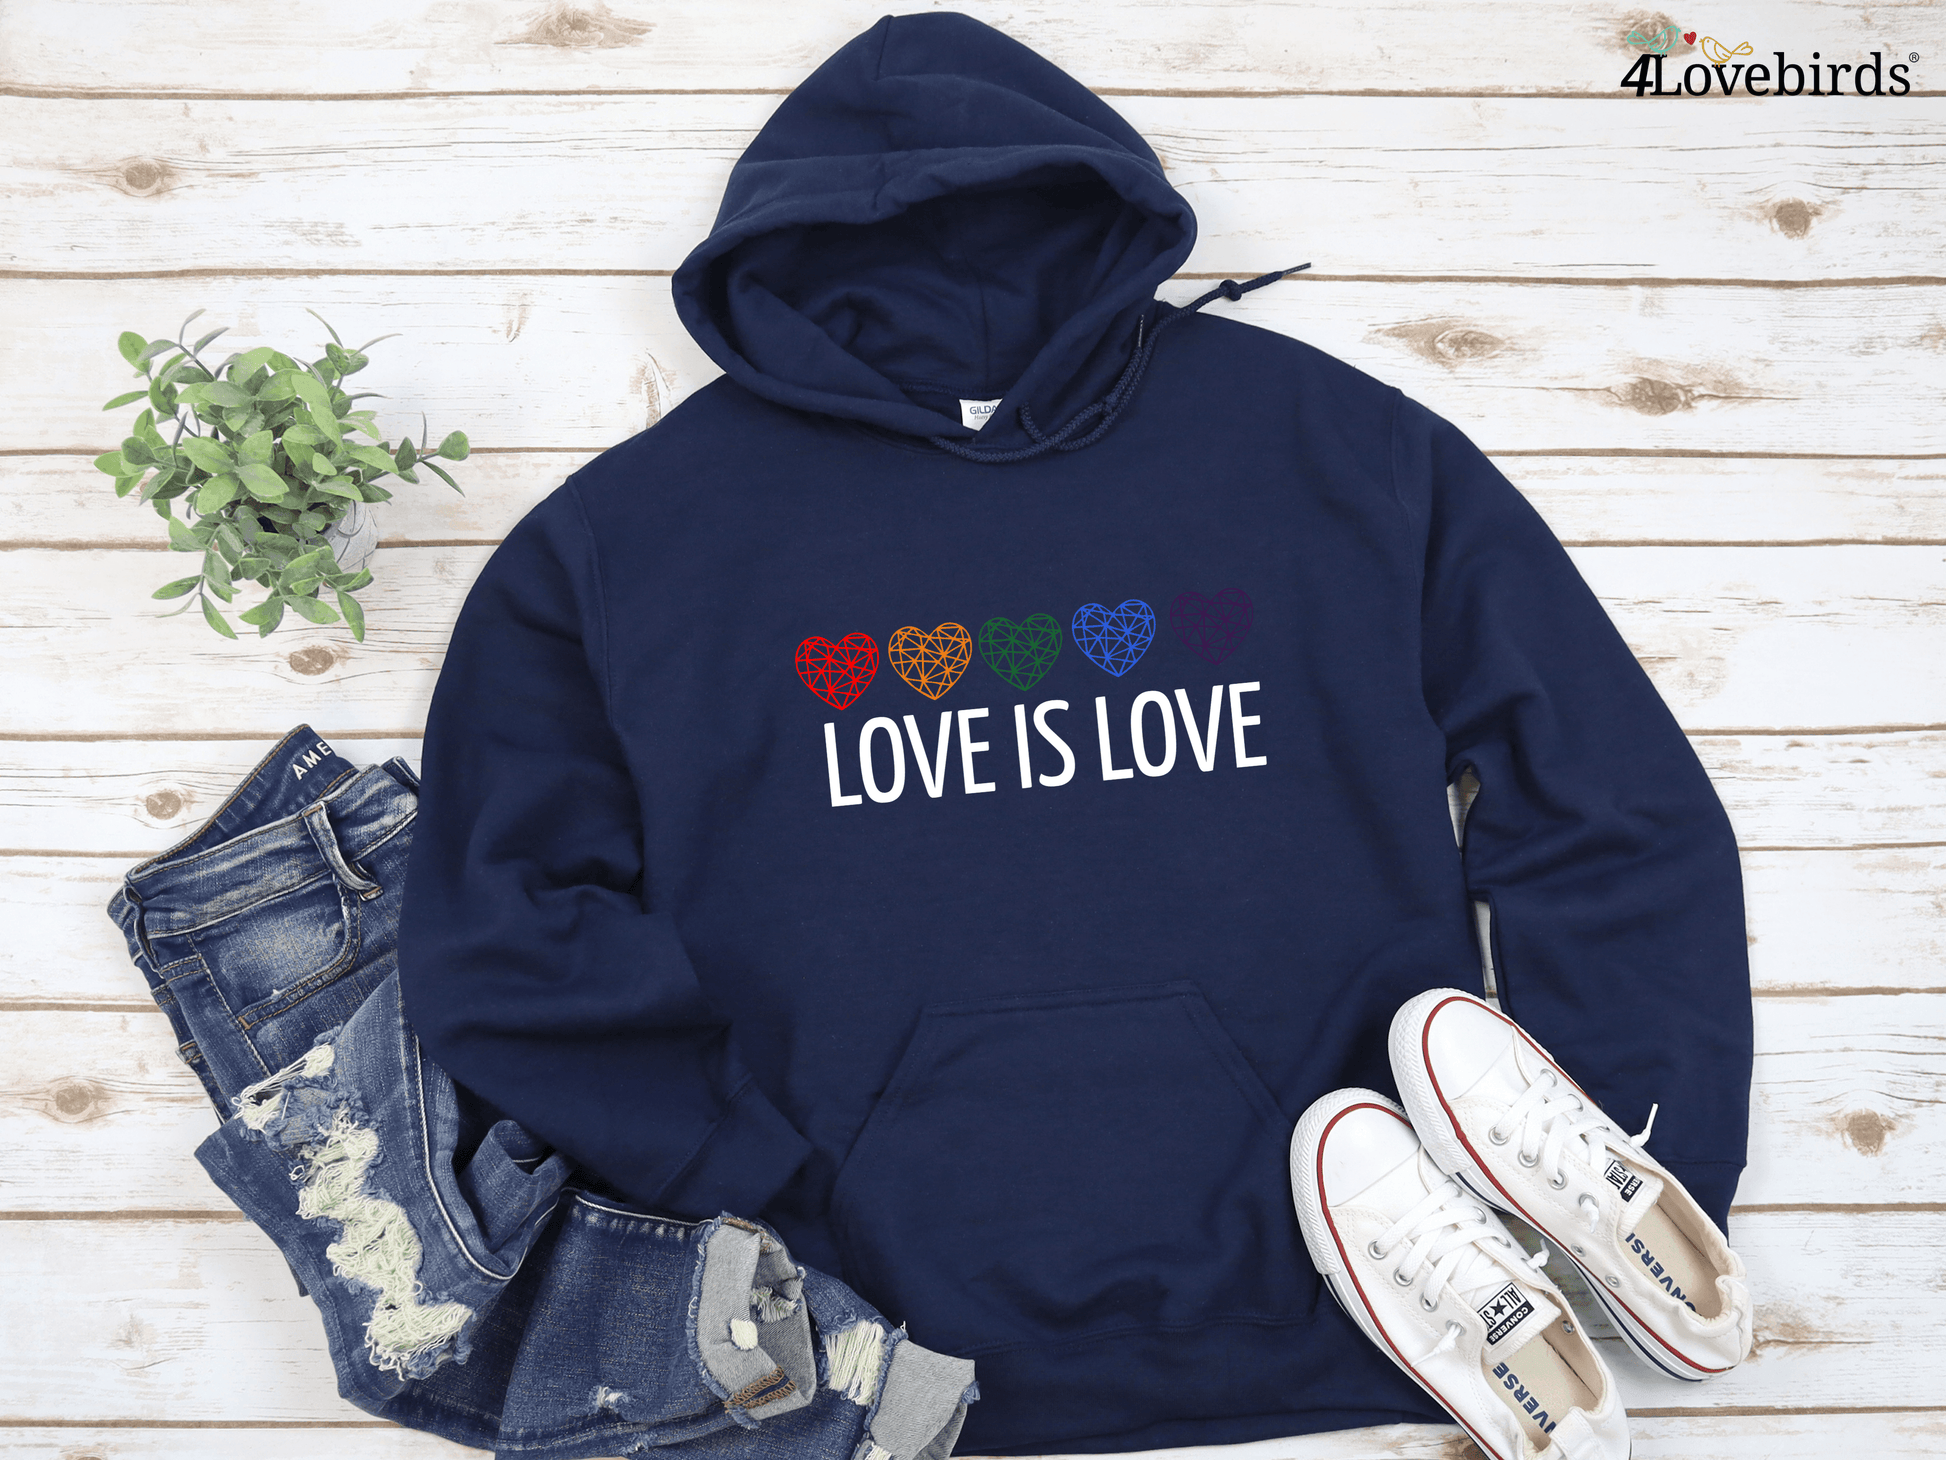 Love is Love Hoodie, LGBT Sweatshirt, Pride Longsleeve, Equality, Love is Love, LGBT Outfit, Love Wins, Rainbow Pride Shirt - 4Lovebirds